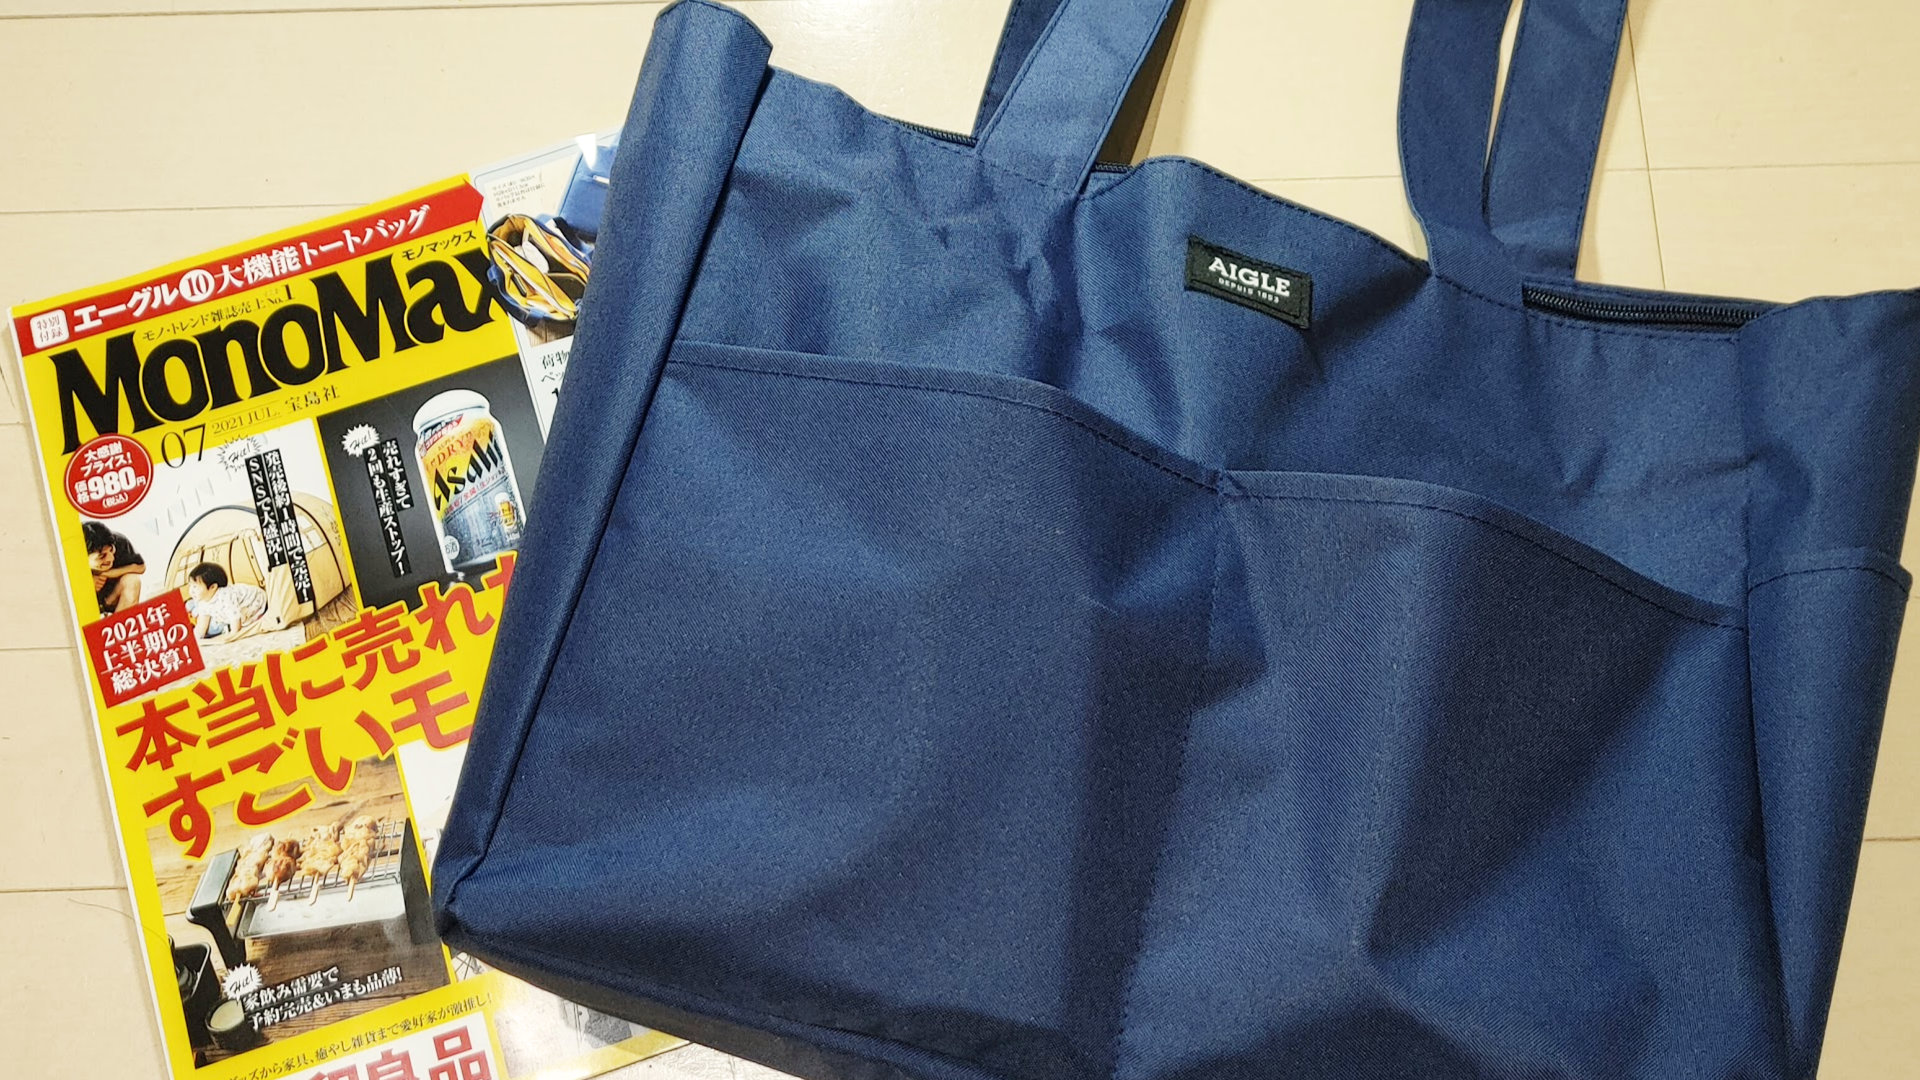 雑誌付録】MonoMax 7月号のAIGLEトートバッグはポケットが多くてガジェットが大量に入るのでおすすめ！ | ULTRA-Base Blog